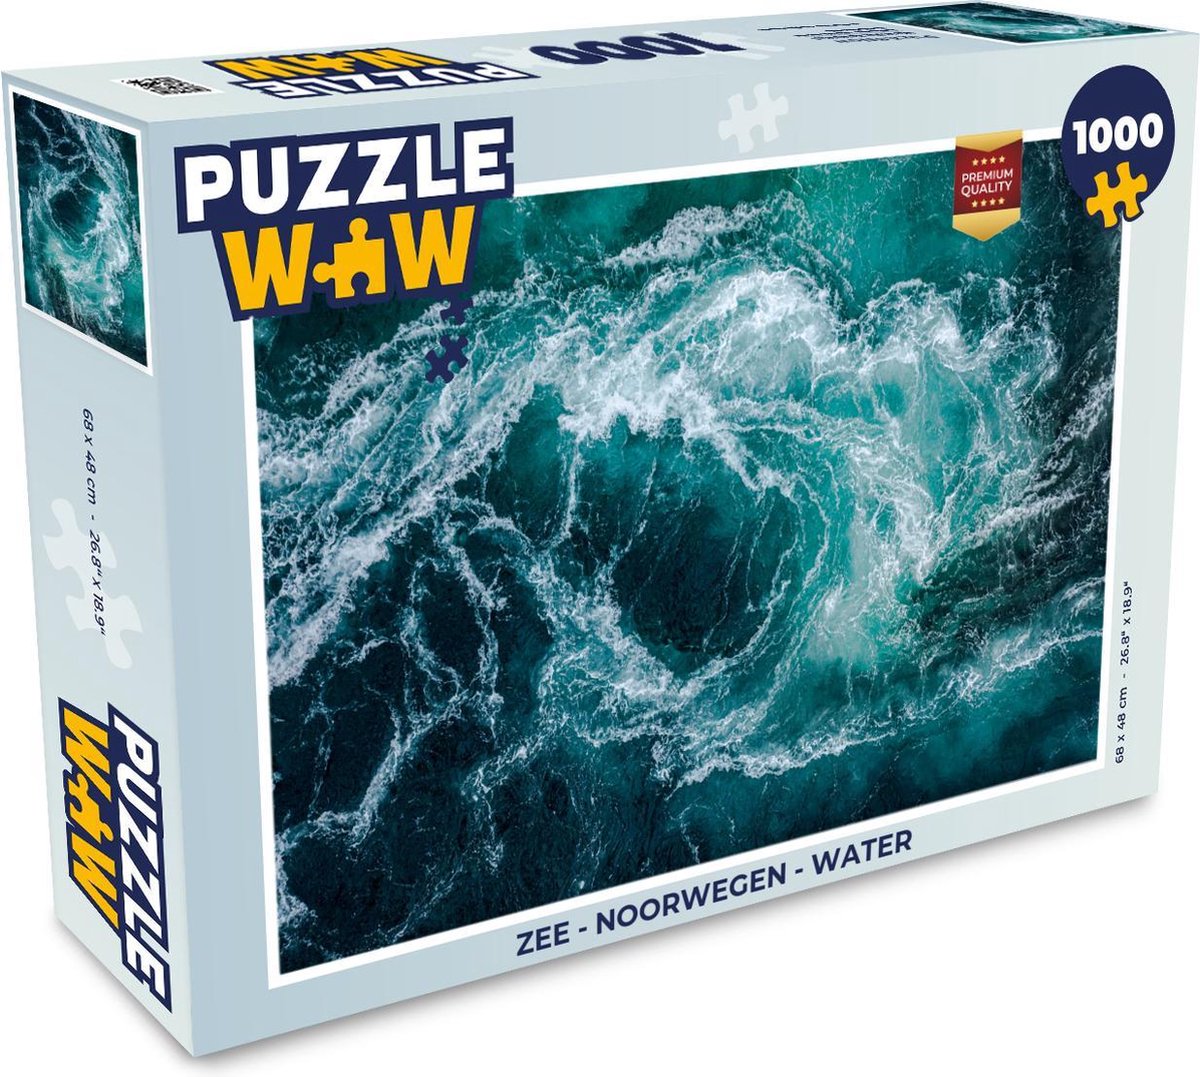 Afbeelding van product PuzzleWow  Puzzel Zee - Noorwegen - Water - Legpuzzel - Puzzel 1000 stukjes volwassenen